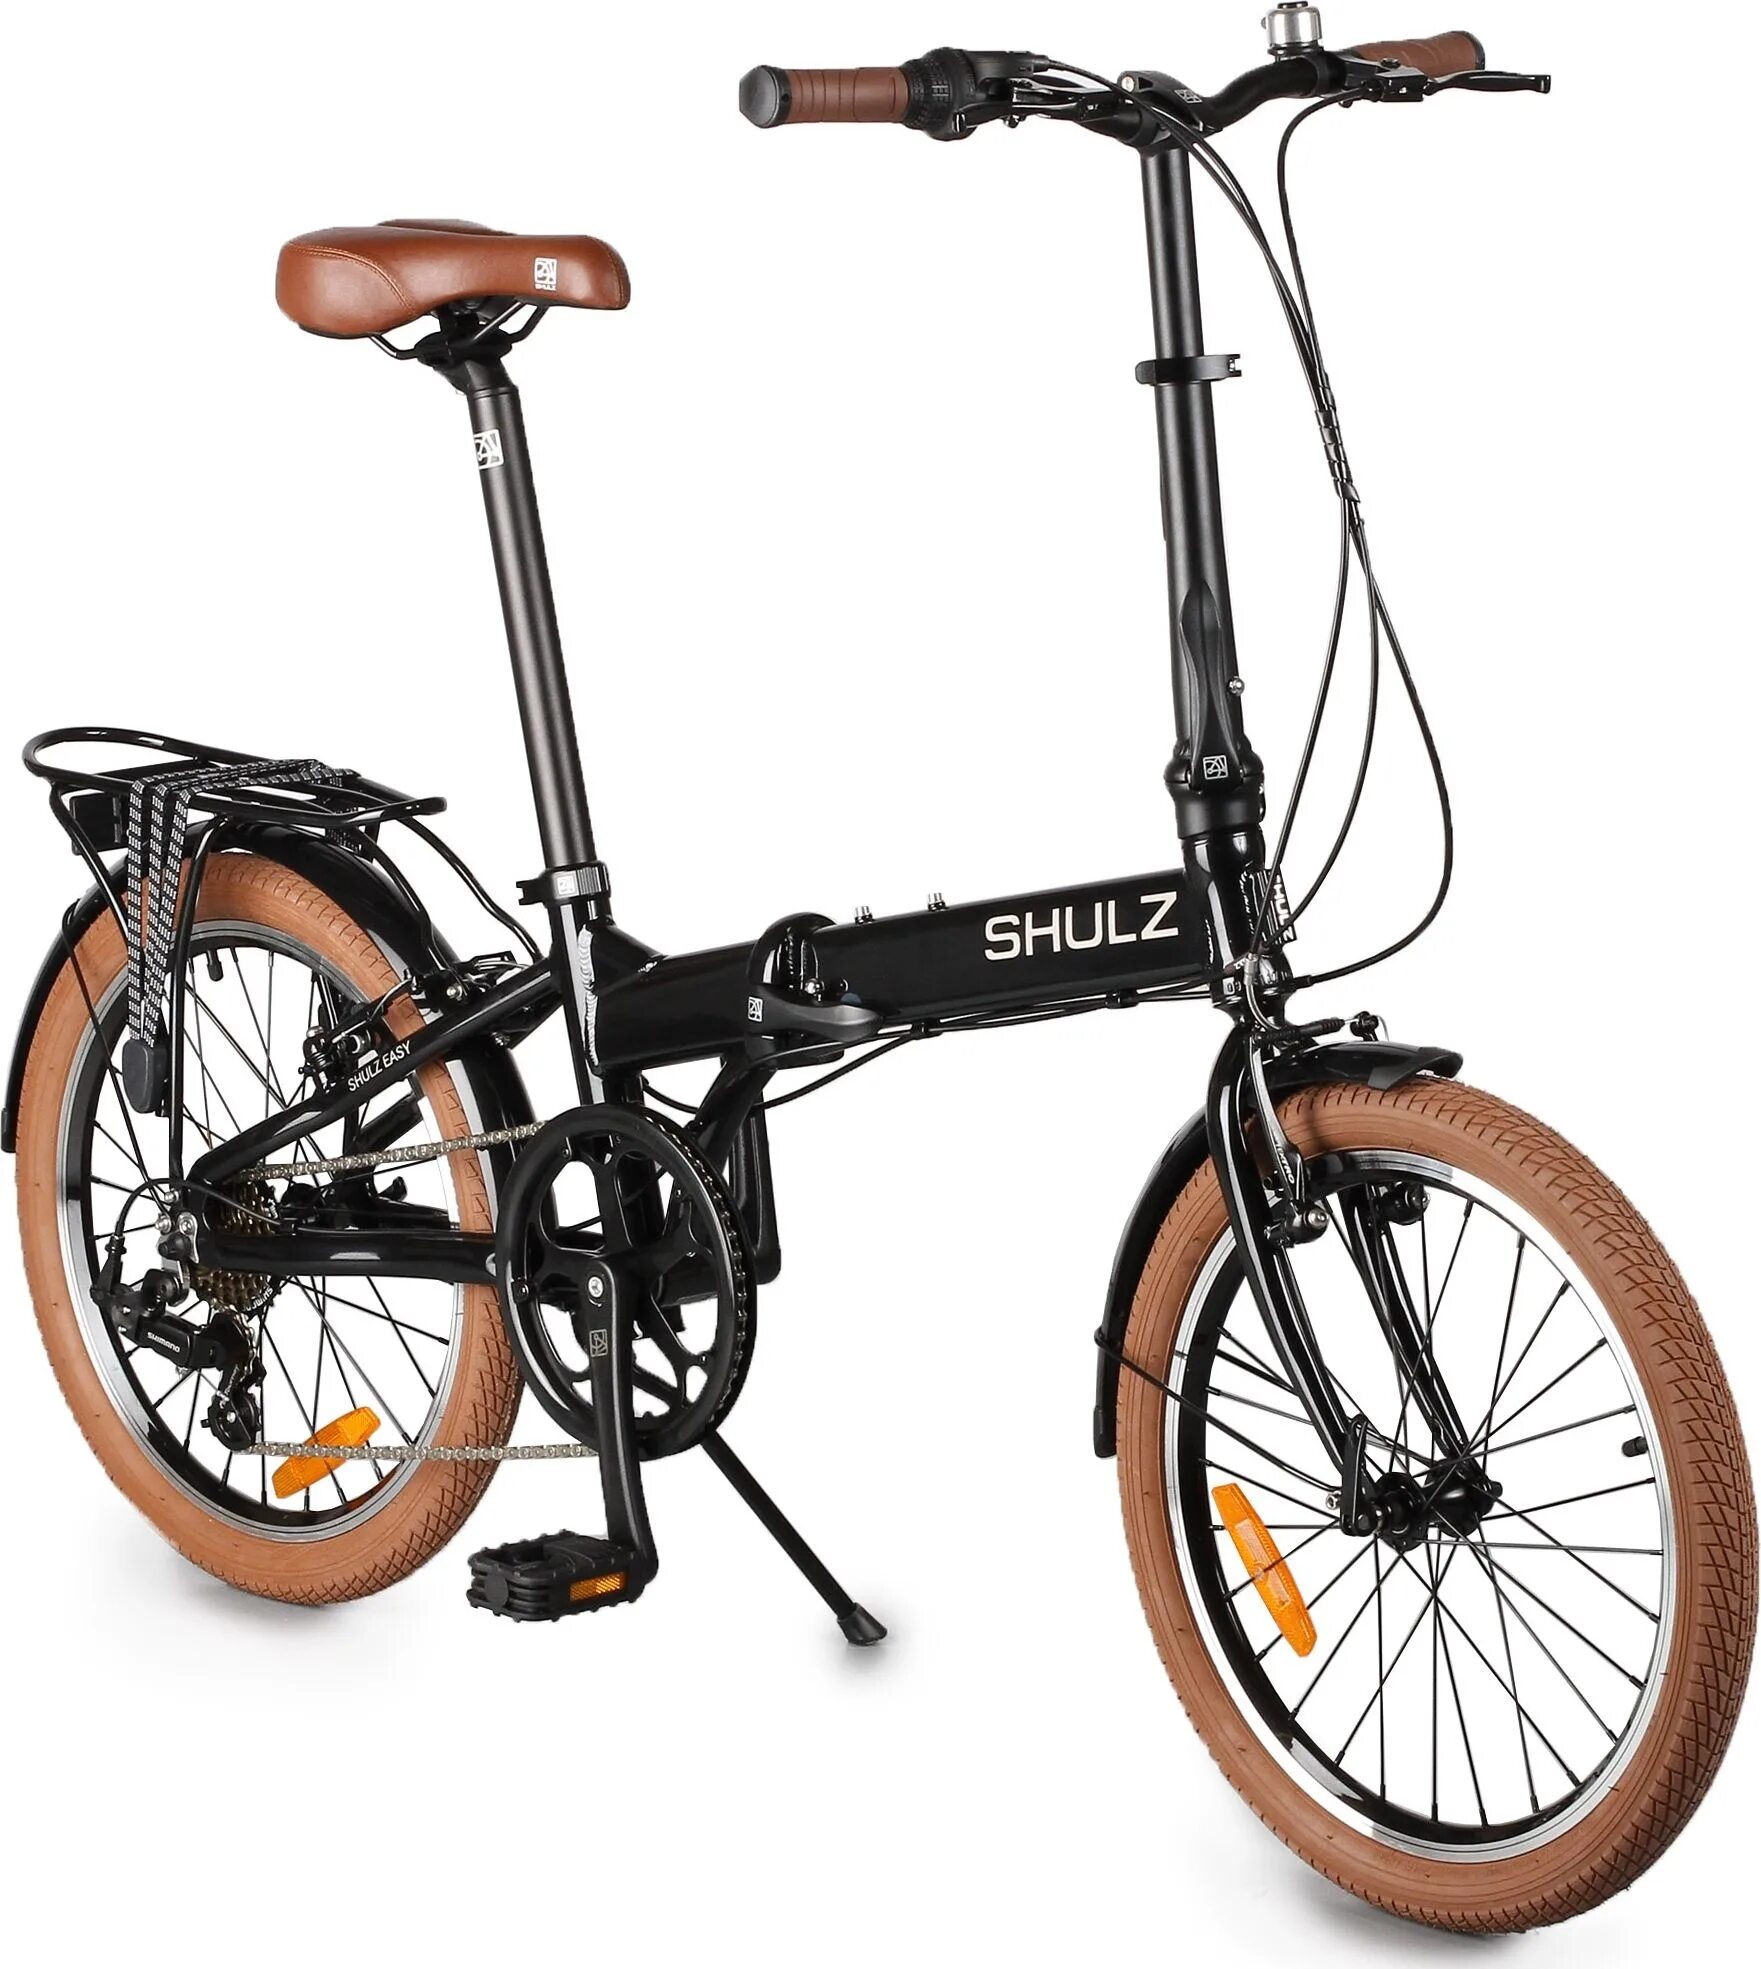 Городской велосипед Shulz easy. Складной велосипед Shulz easy. Городской велосипед Shulz Lentus. Велосипед Шульц складной алюминиевый. Легкий складной велосипед взрослый